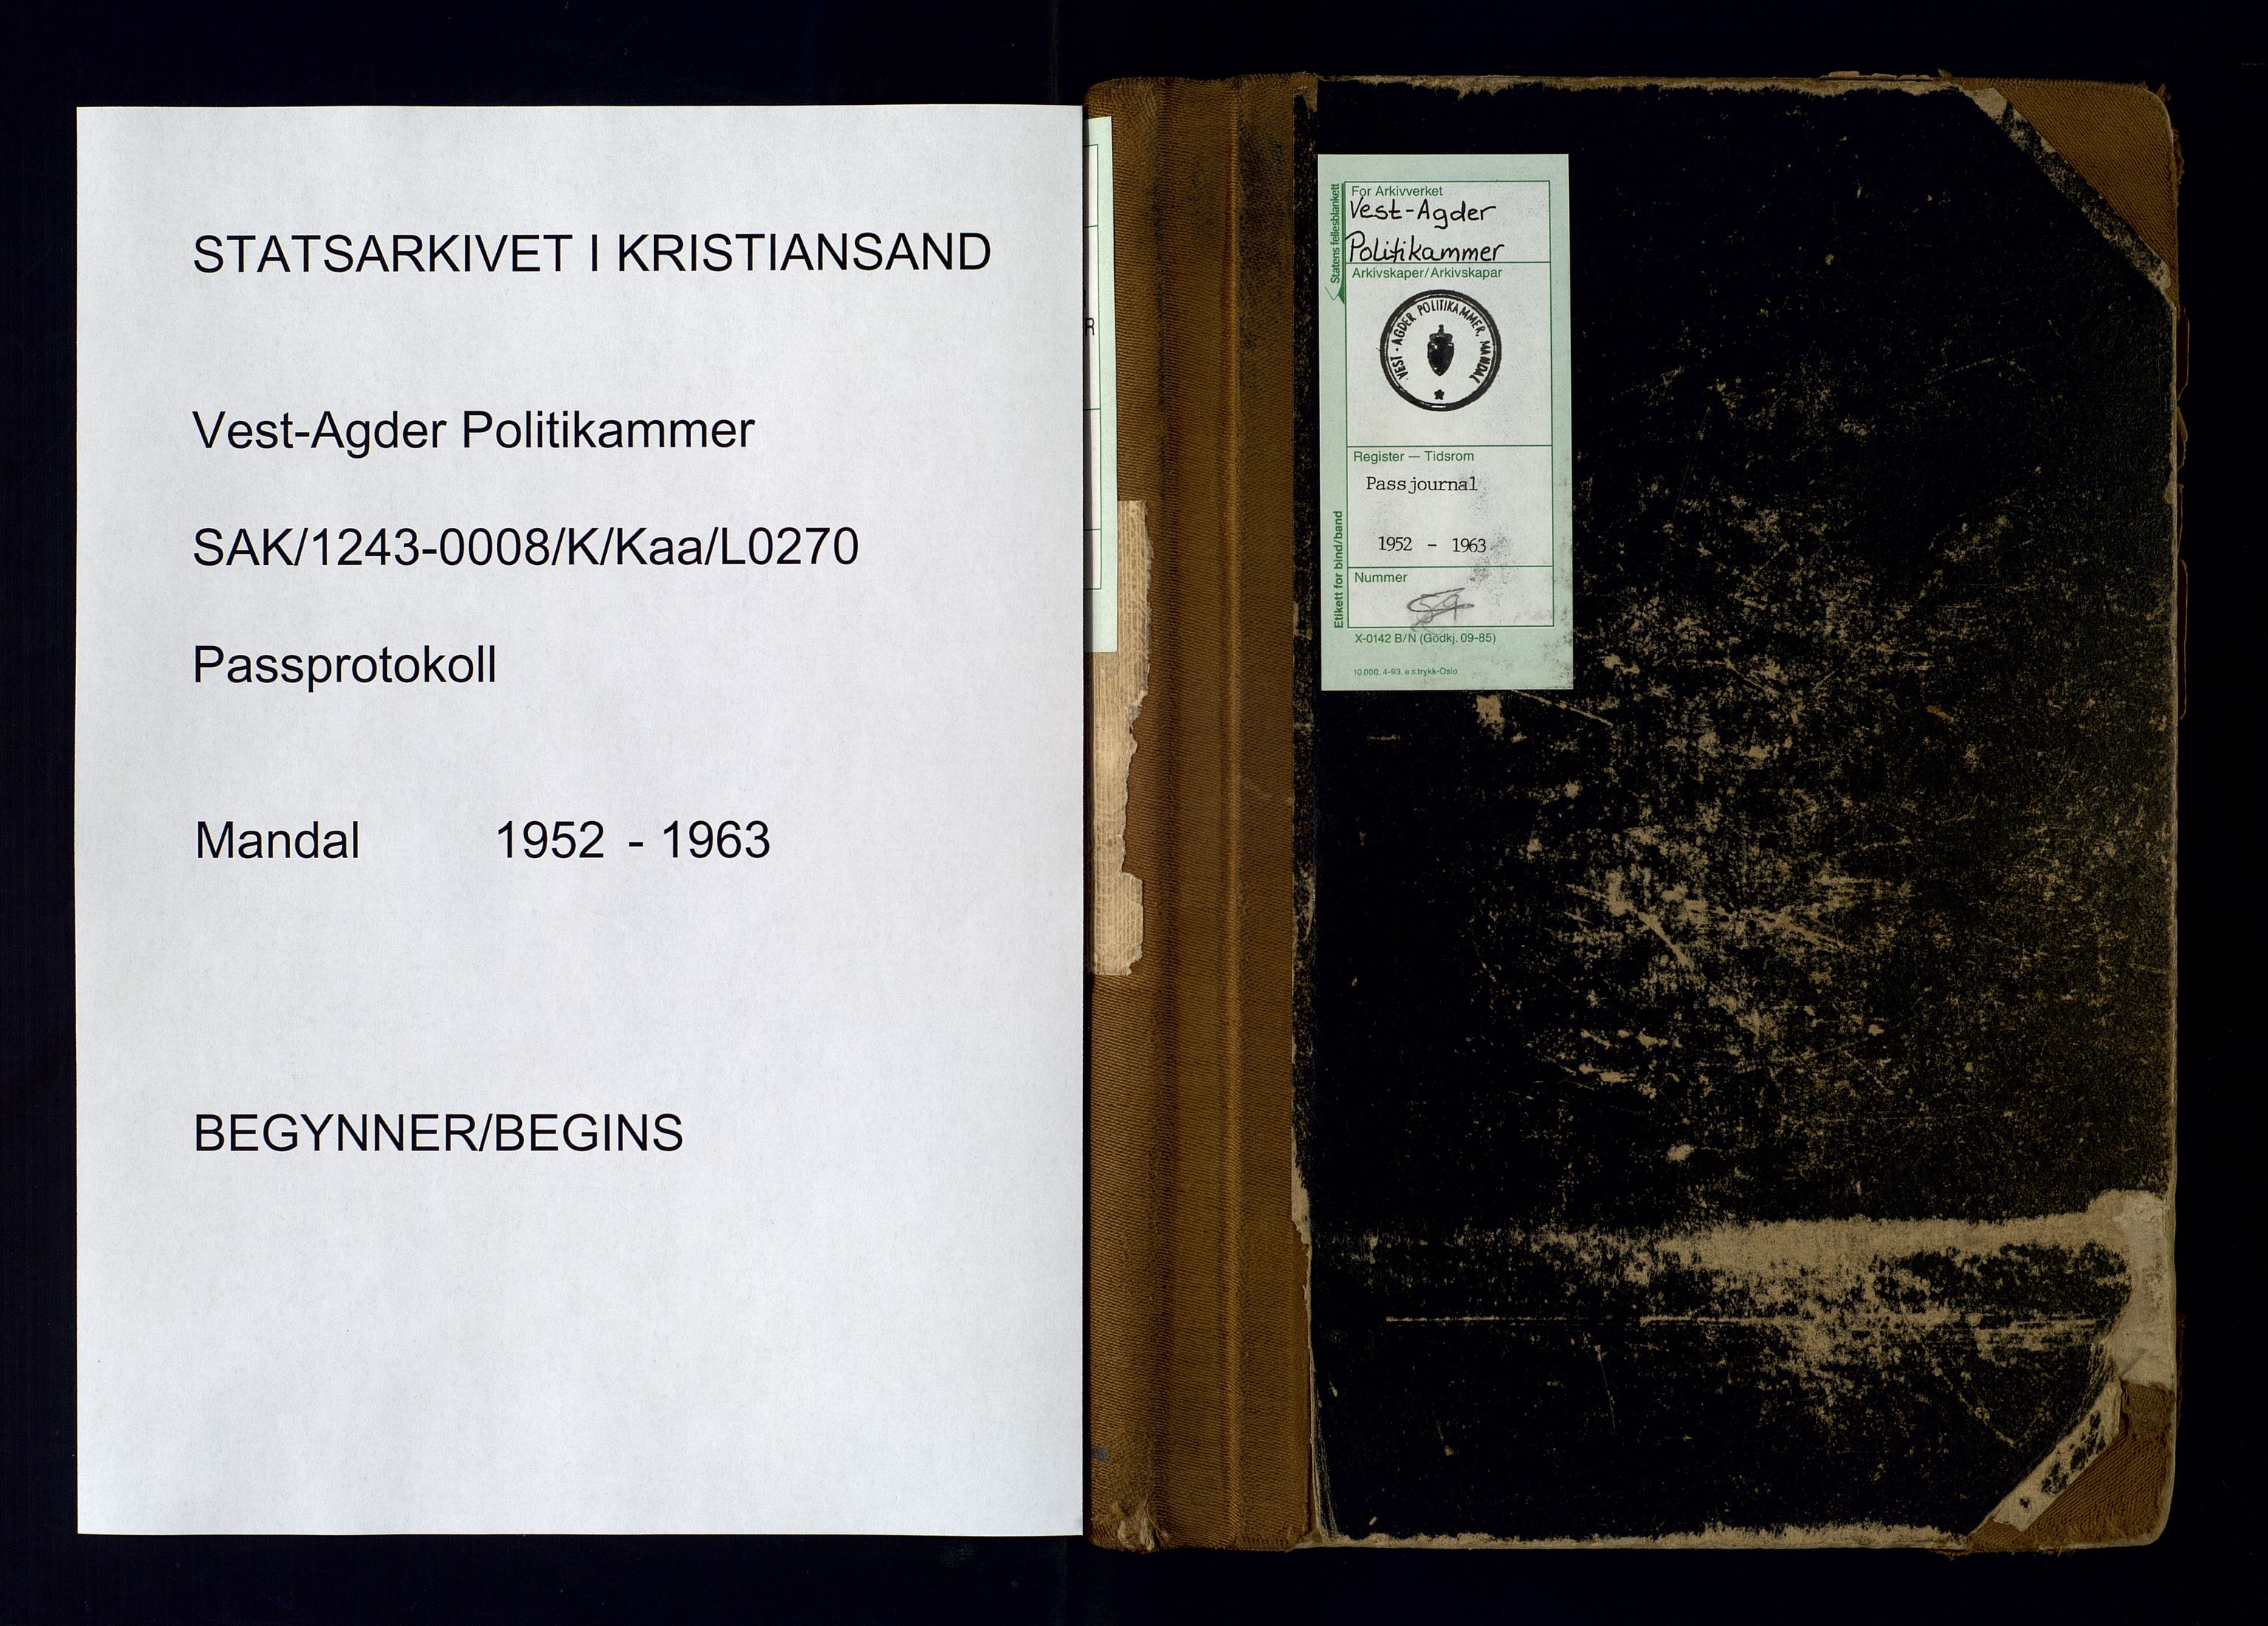 Vest-Agder politikammer, SAK/1243-0008/K/Kaa/L0270: Passjournal, 1952-1963